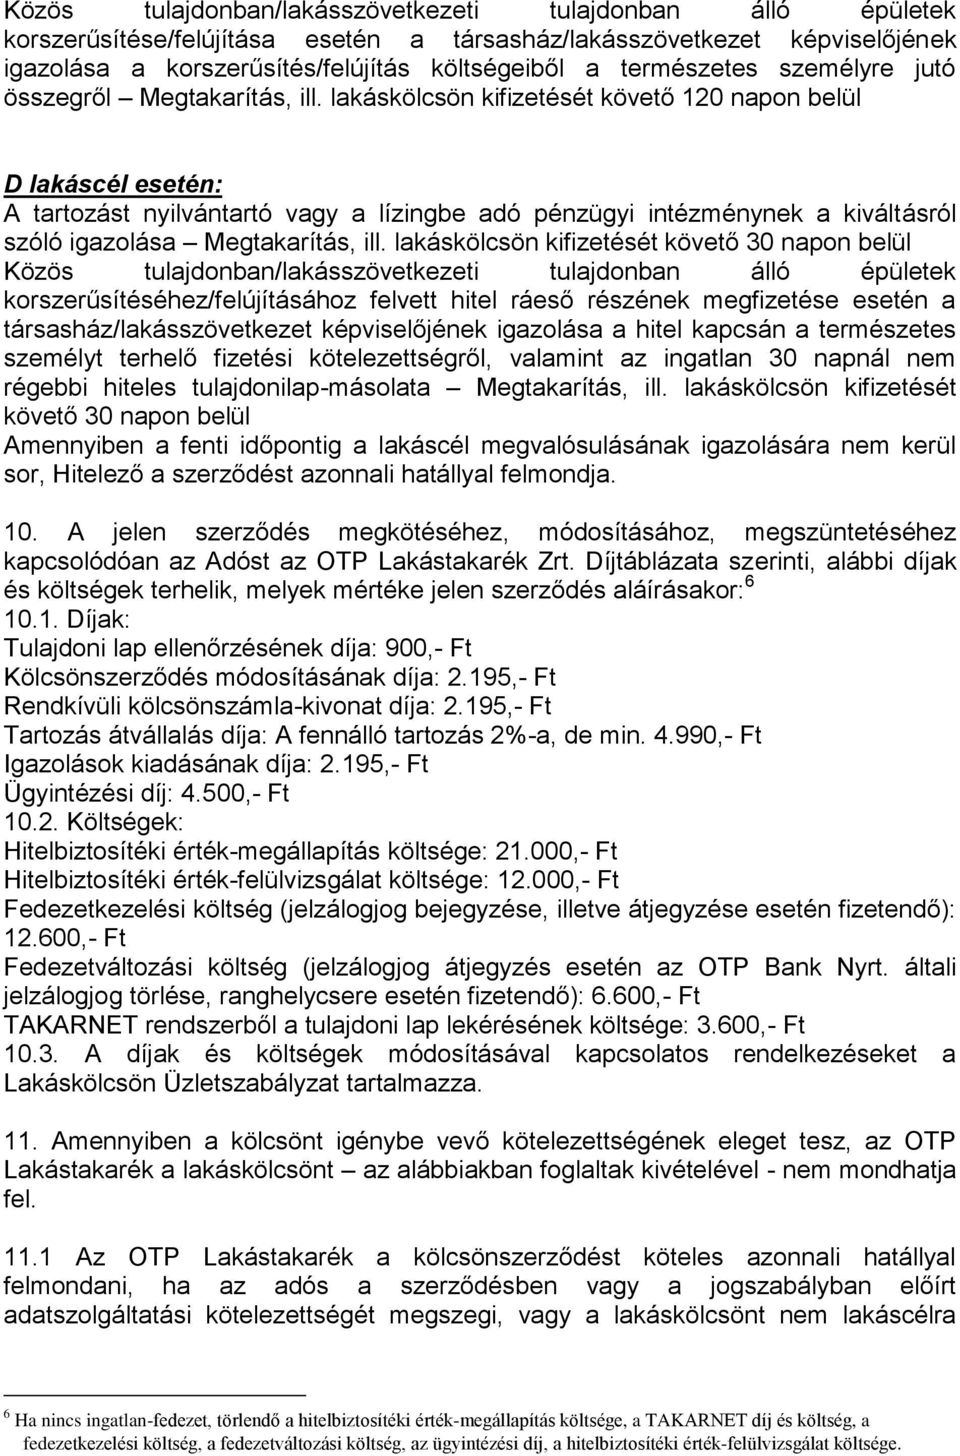 OTP Lakástakarék Zrt. annak megbízásából hitelközvetítőként eljáró OTP Bank  Nyrt. - PDF Ingyenes letöltés